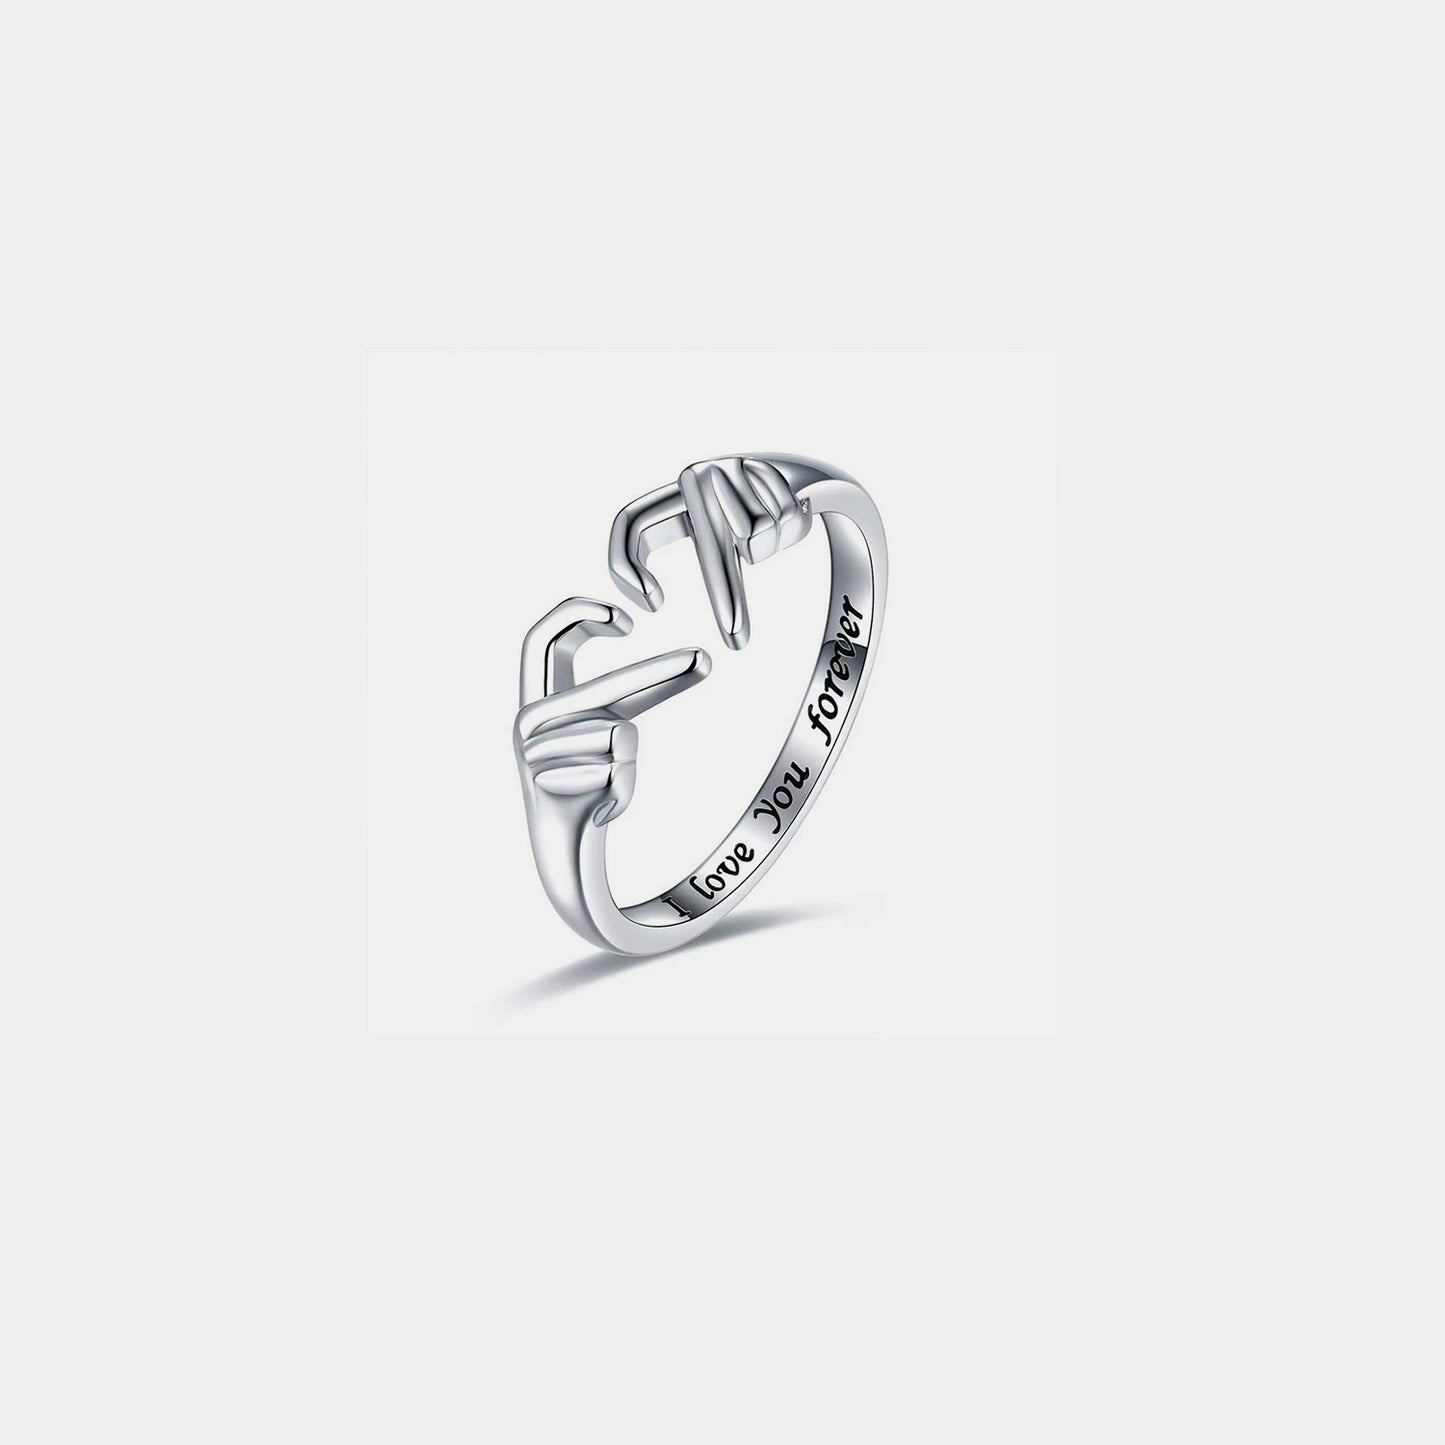 Handherzförmiger offener Ring aus 925er Sterlingsilber